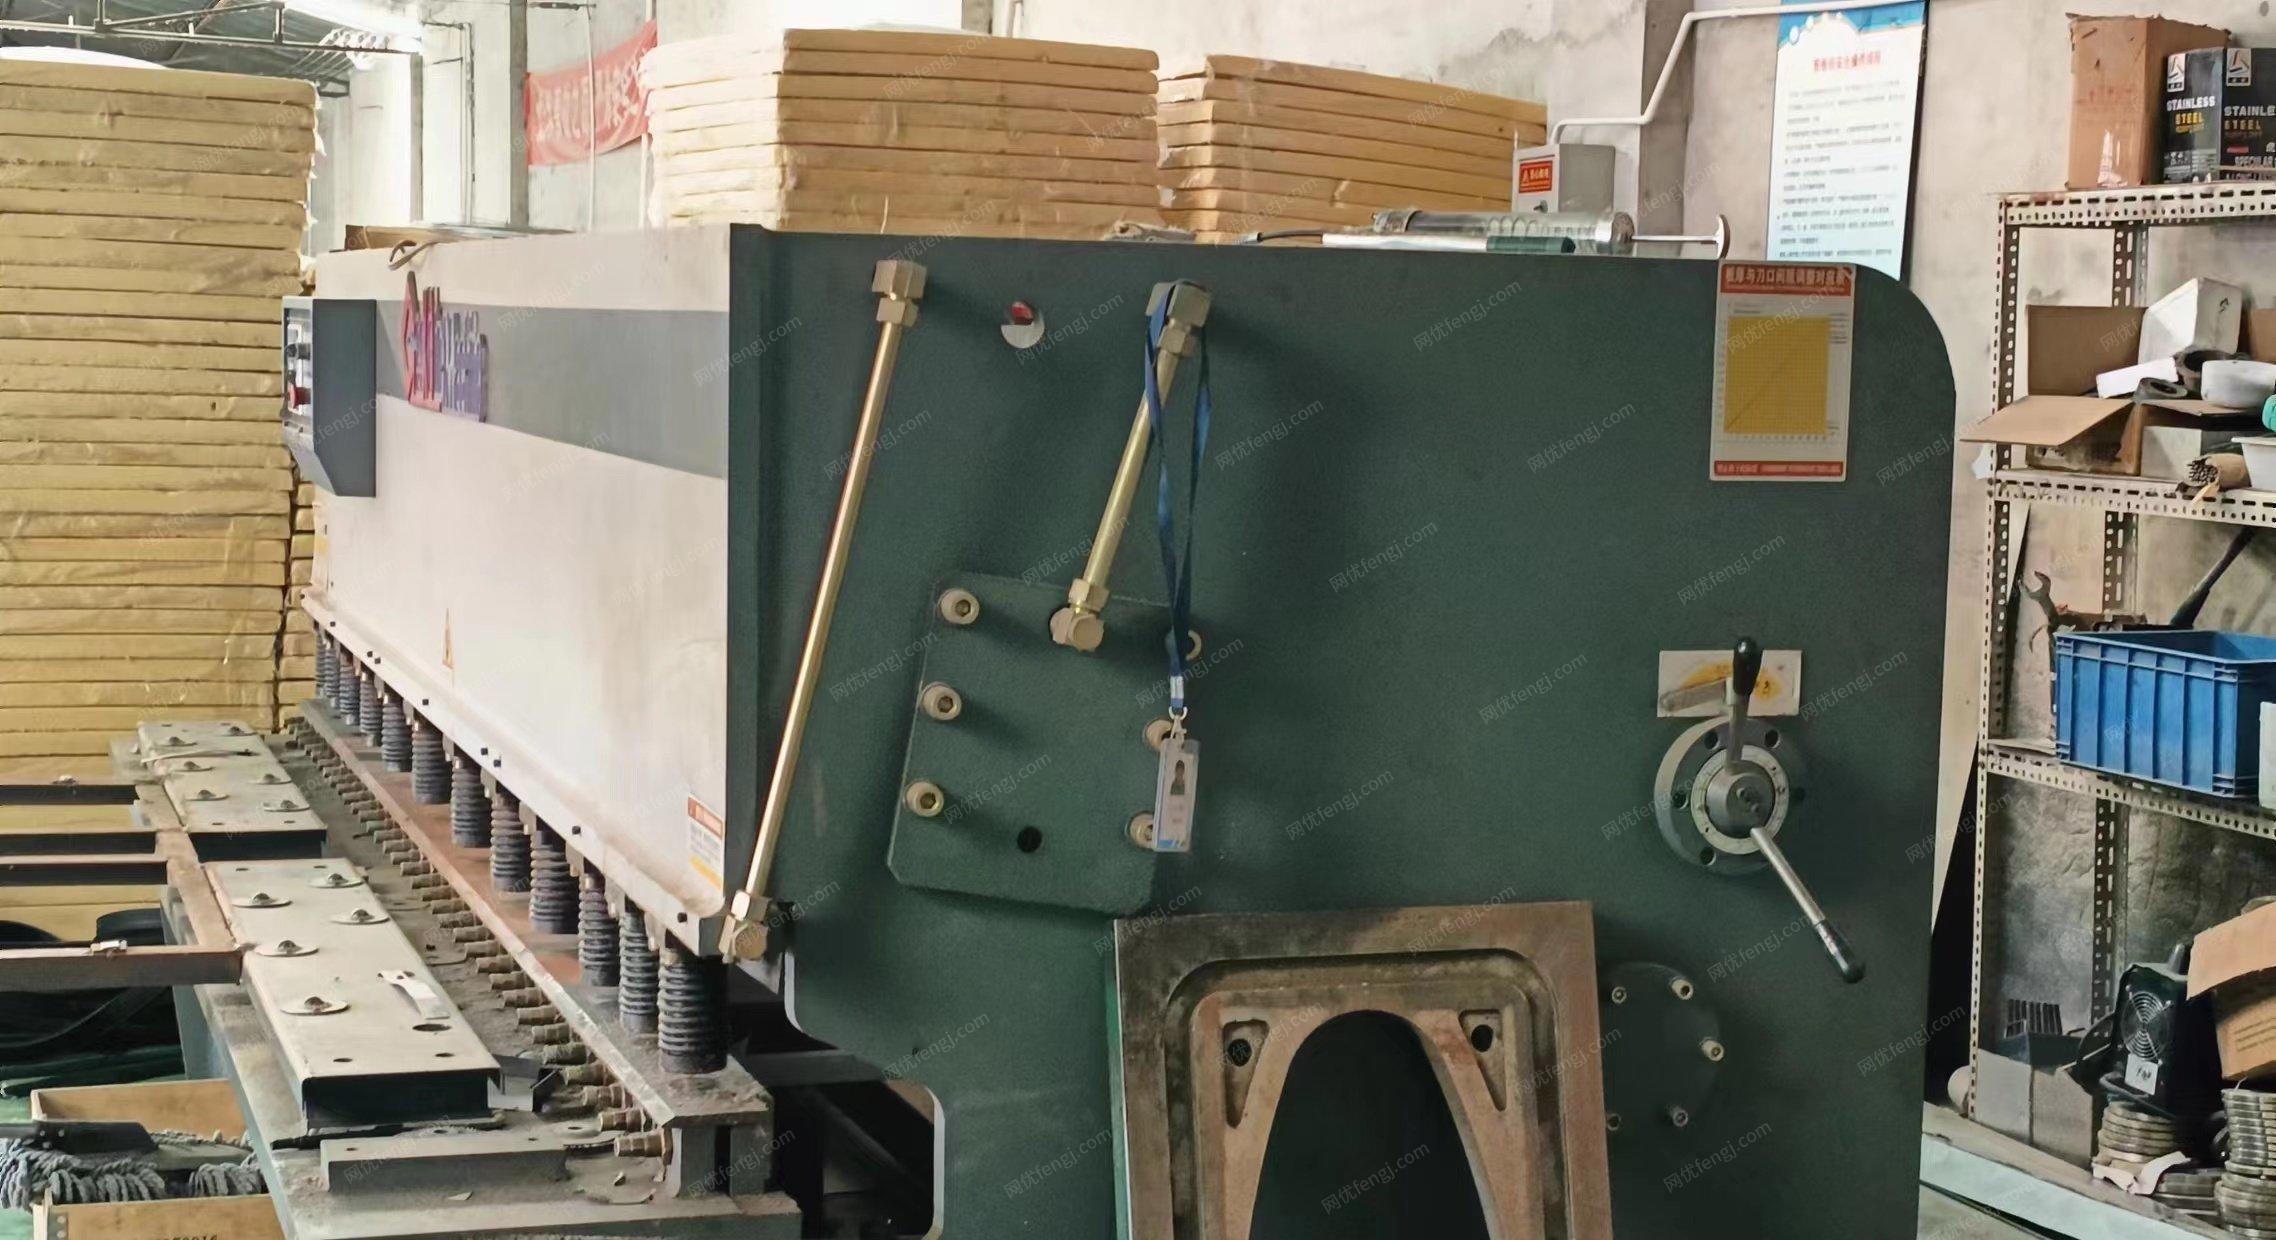 北京顺义区不锈钢水箱厂机床设备打包出售